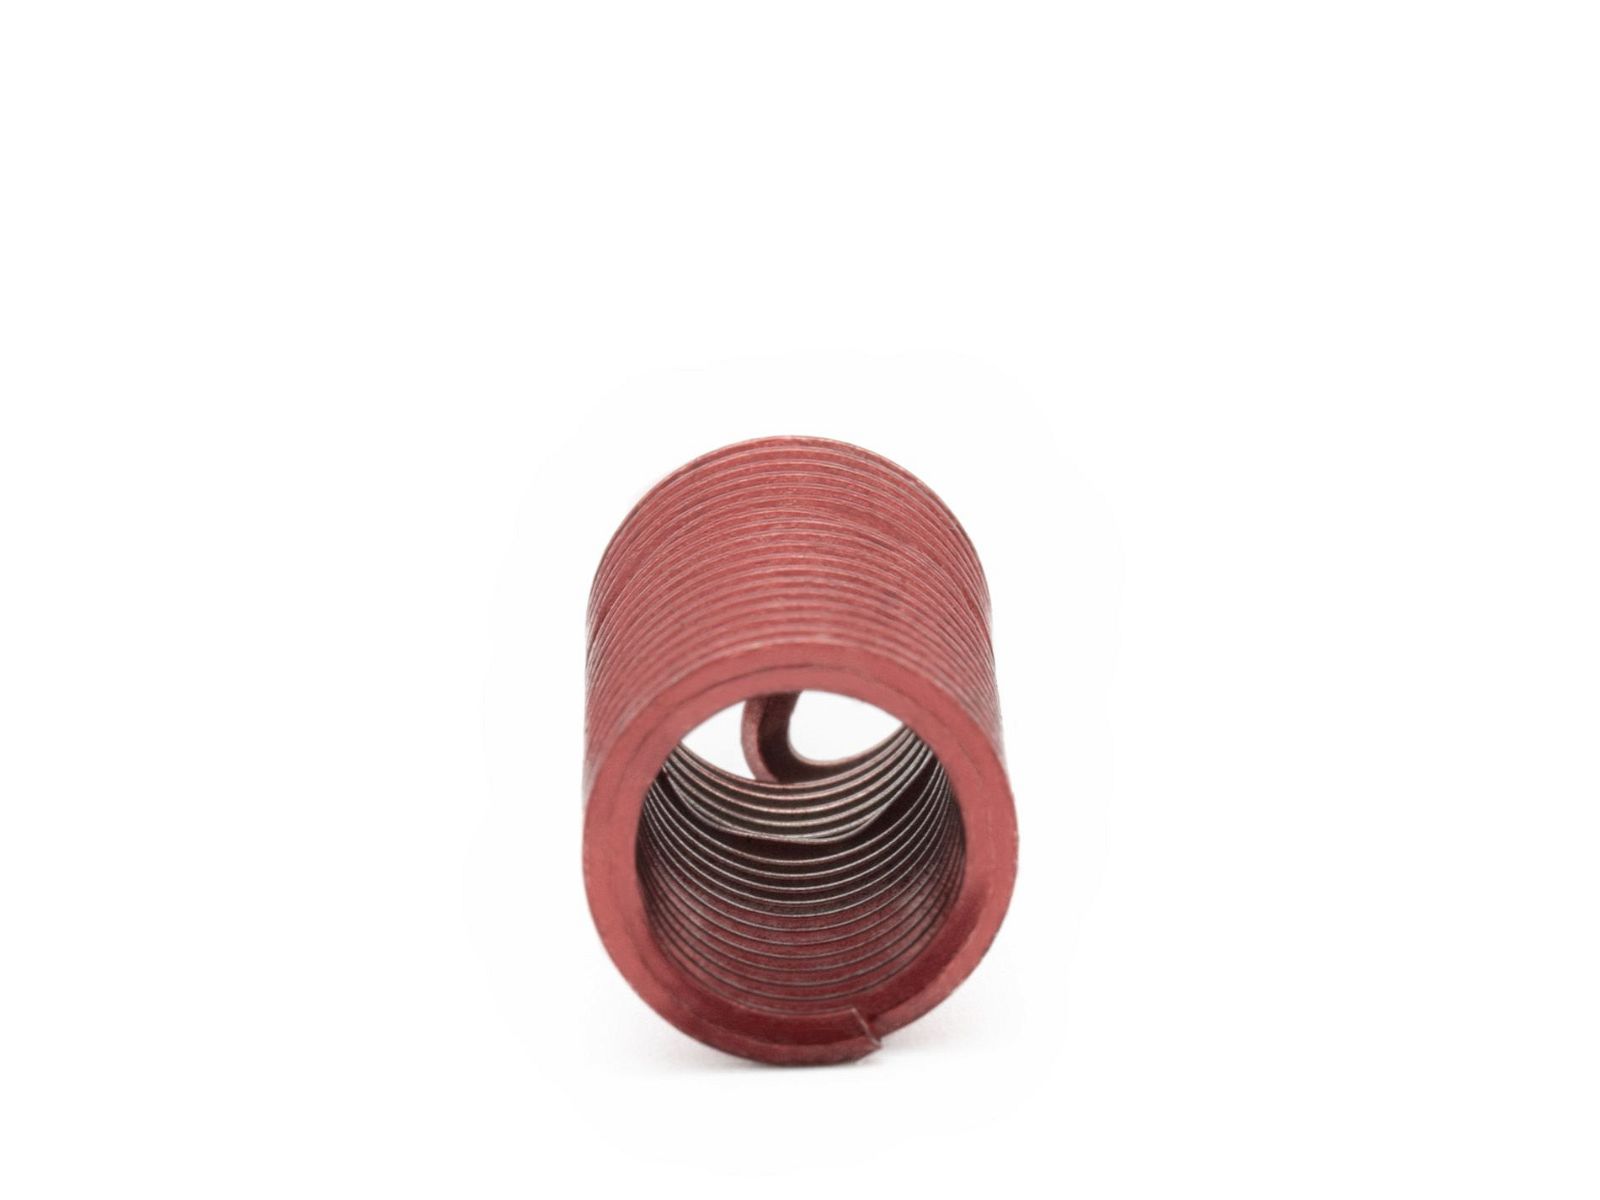 BaerCoil Wire Thread Inserts BSF 5/16 x 22 - 3.0 D (23.81 mm) - screw grip (screw locking) - 100 pcs.